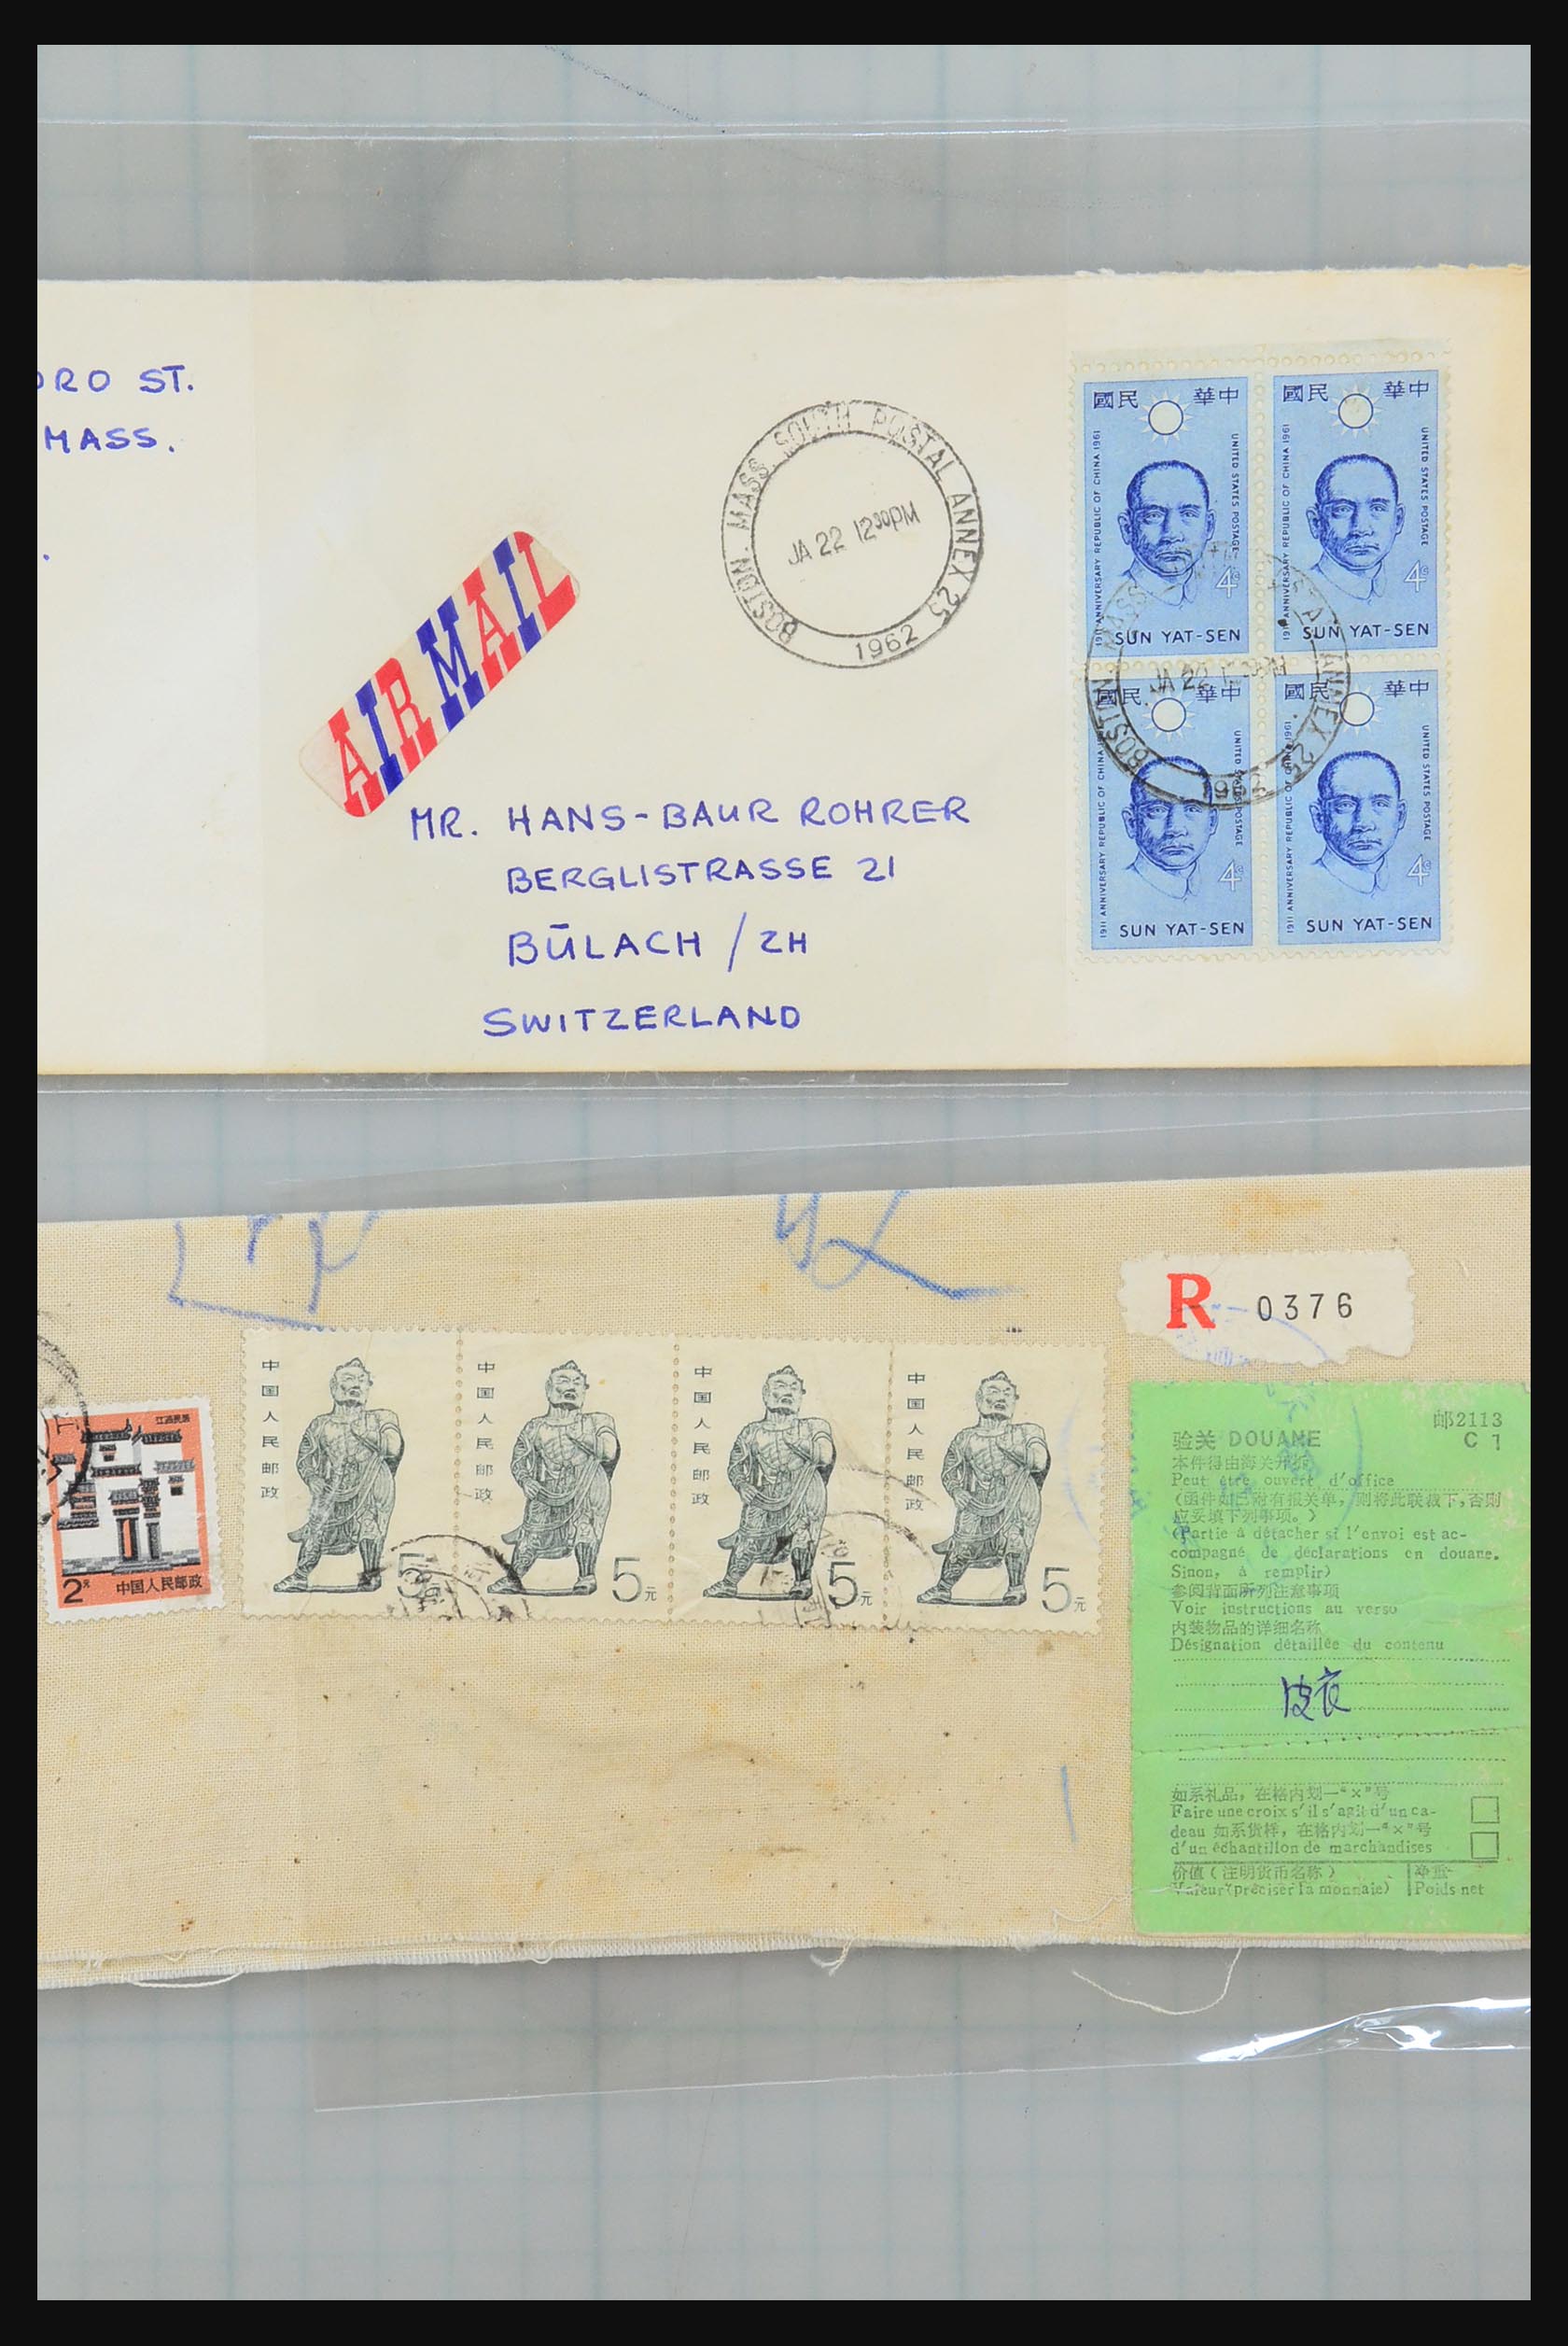 31355 150 - 31355 Azië brieven 1900-1980.